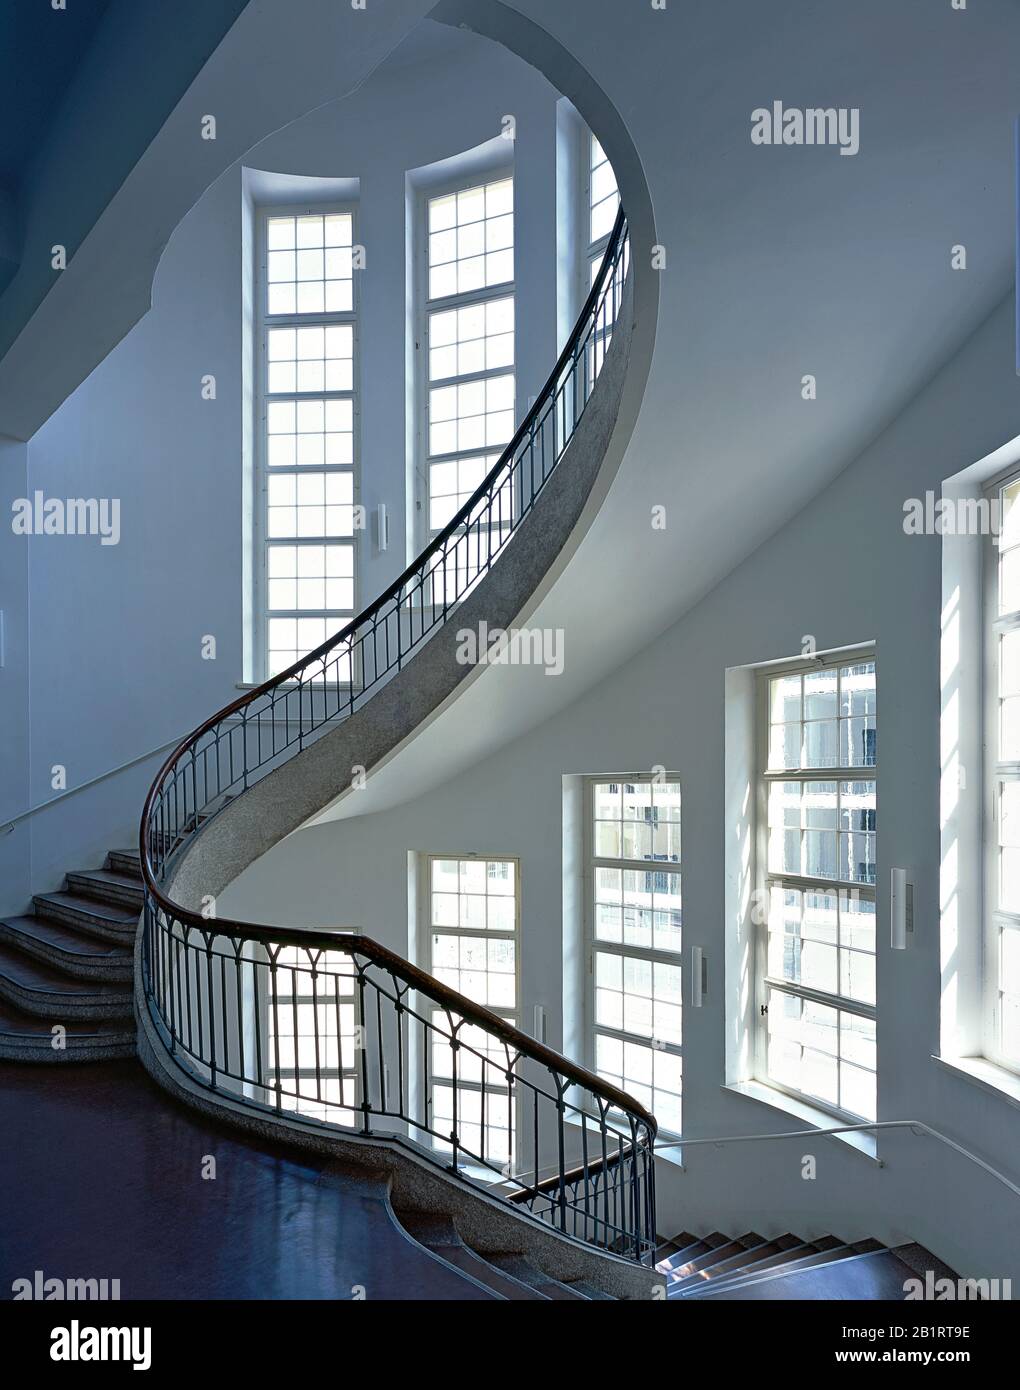 Escalier de l'Université Bauhaus Weimar, escalier principal, Thuringe, Allemagne Banque D'Images